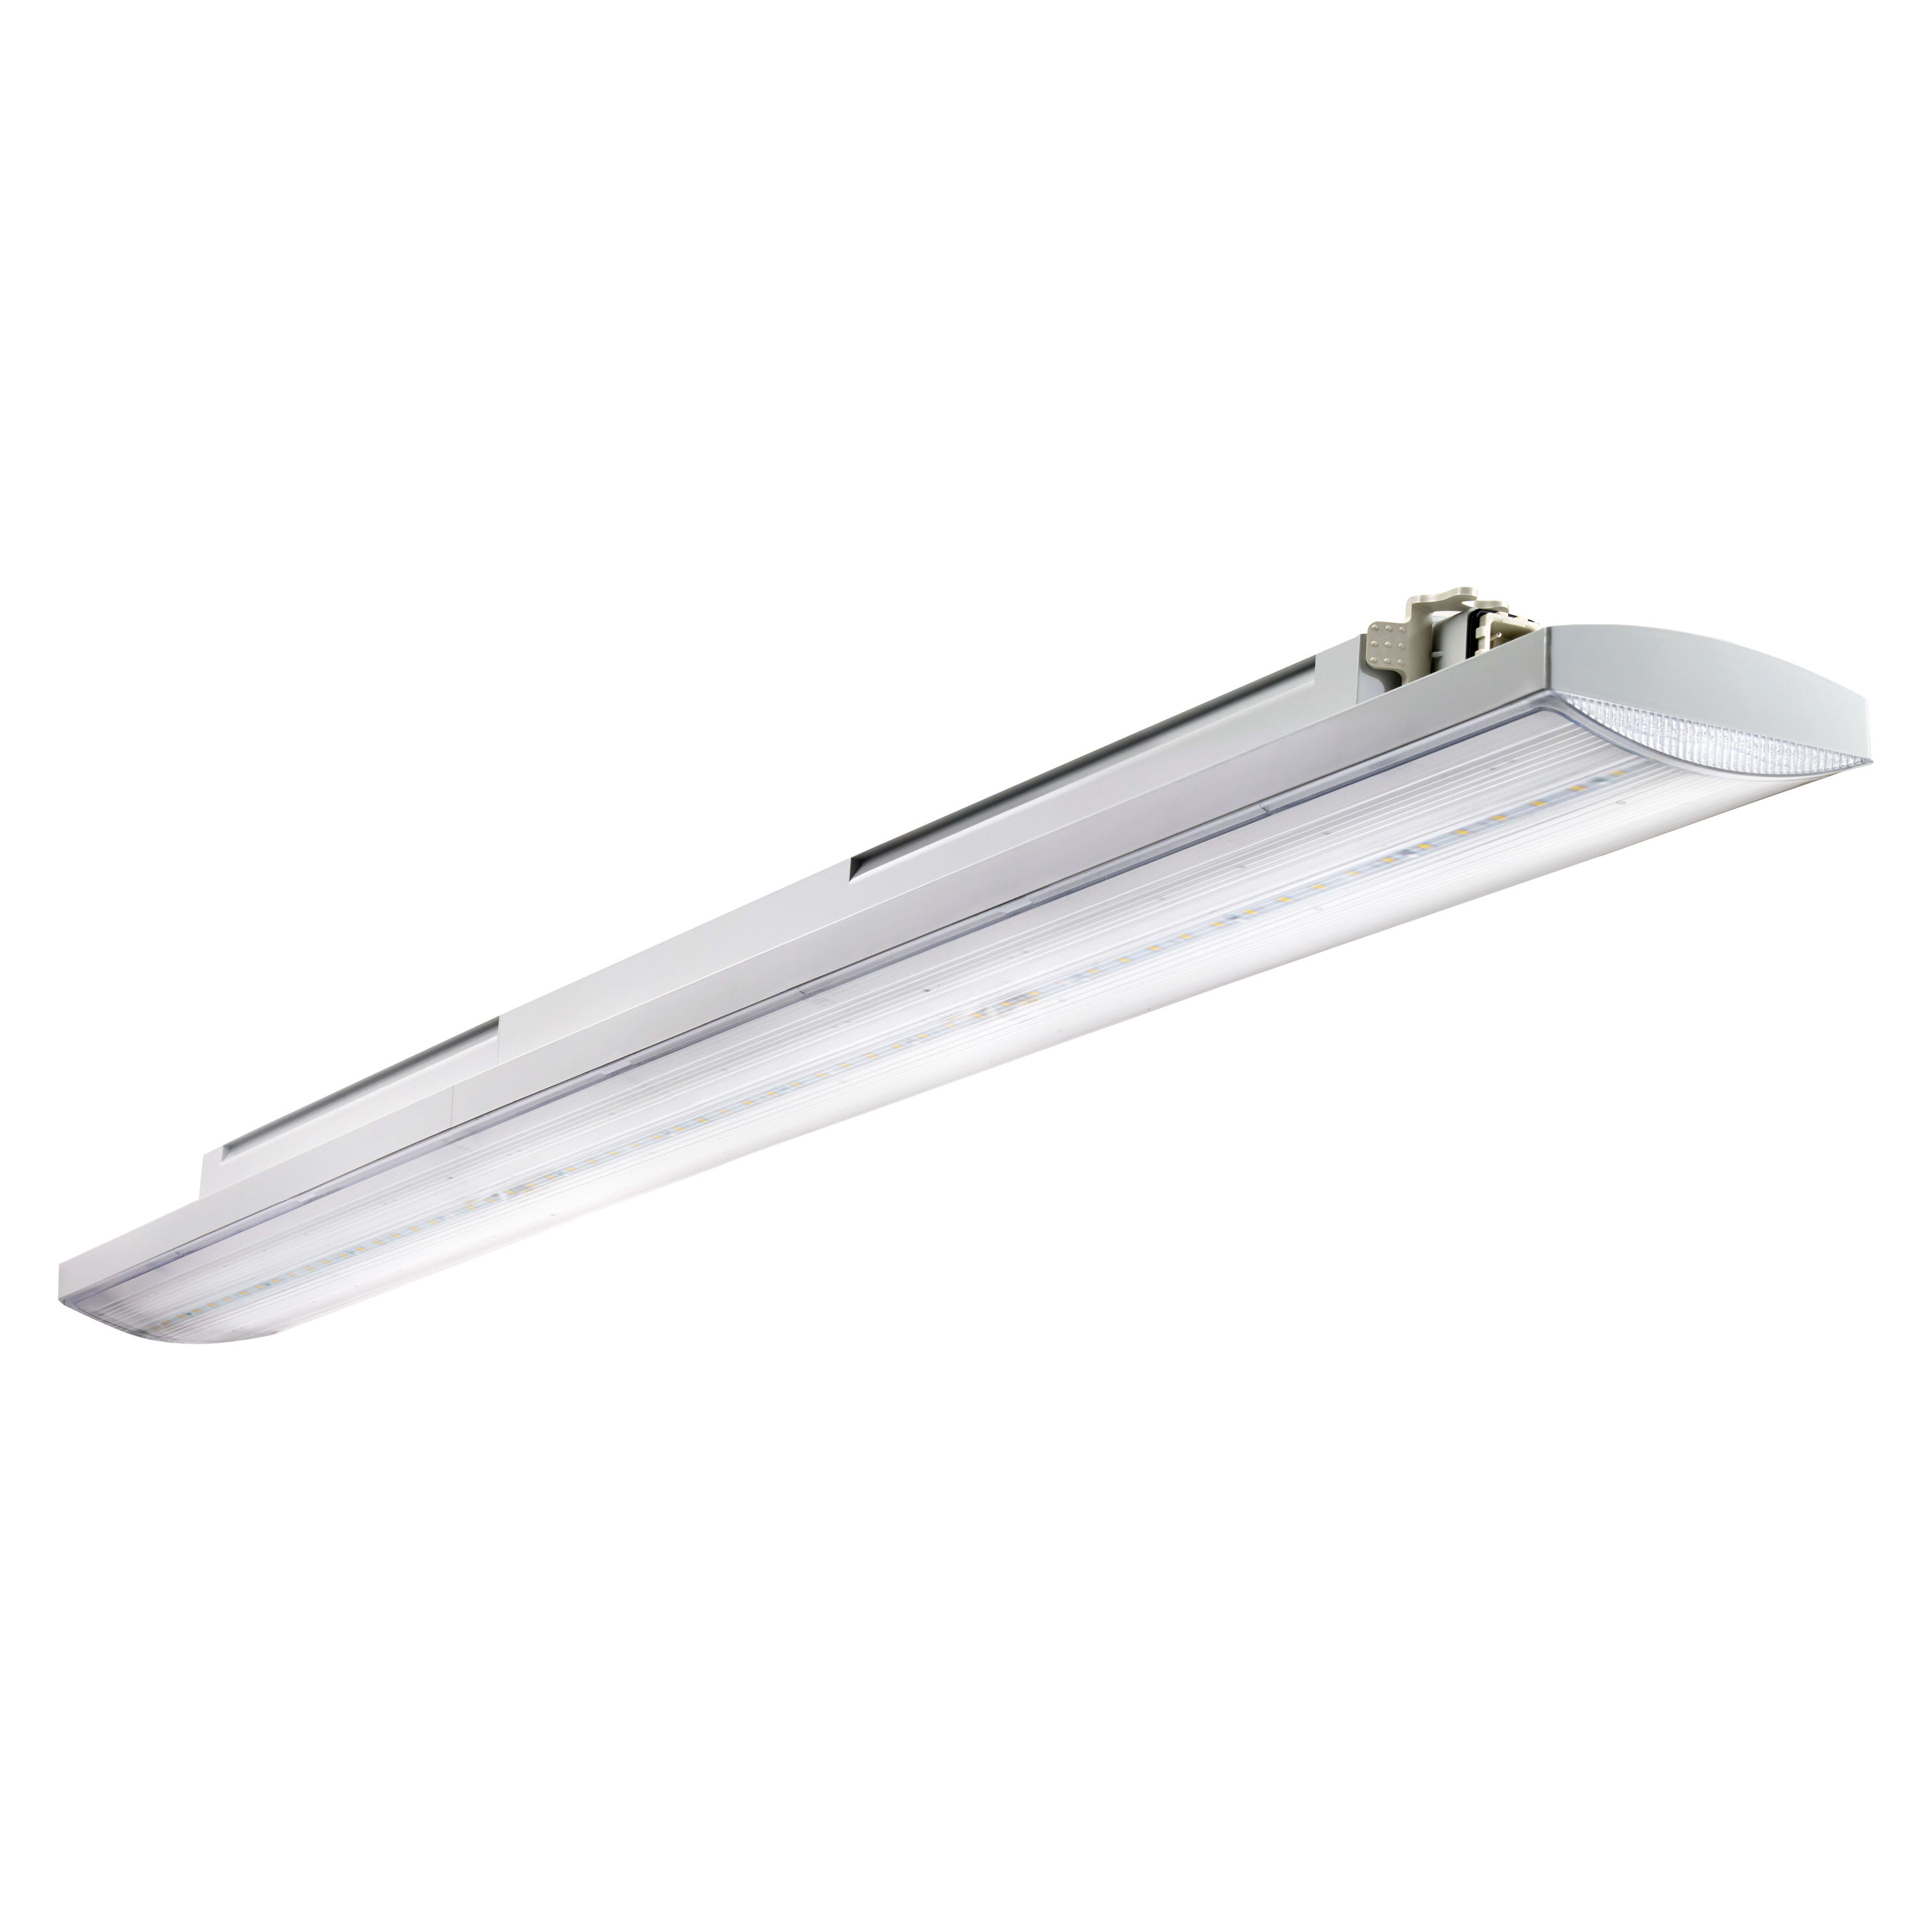 POP LED - Réglette LED pour salle d'eau (vol.2) - ARIC 53012